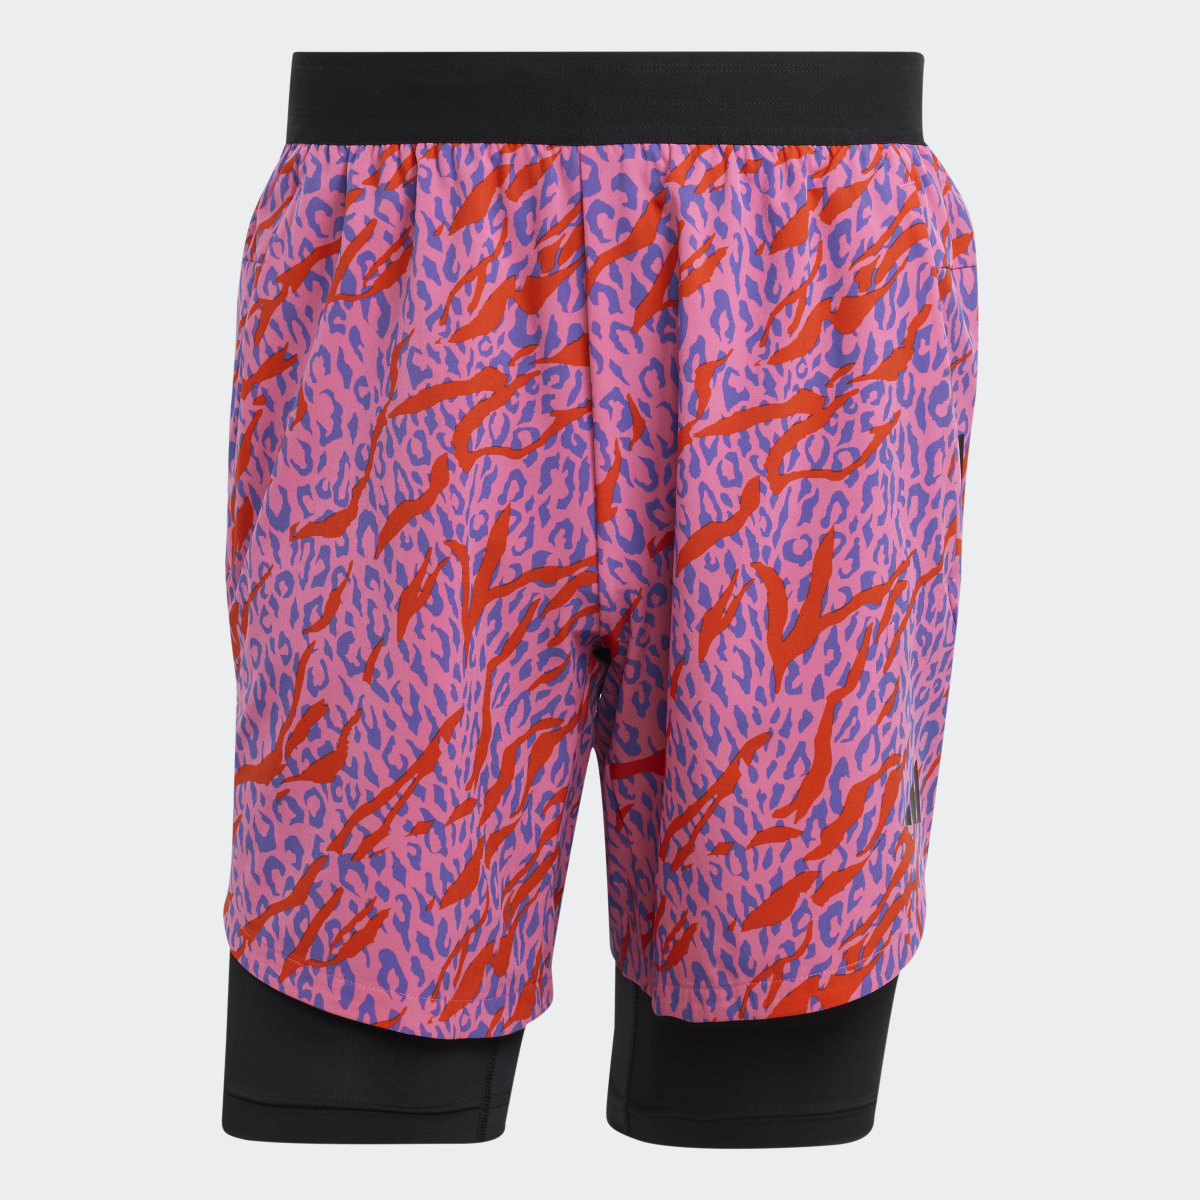 Adidas Shorts HIIT Estampado Animal Curados por Cody Rigsby. 4